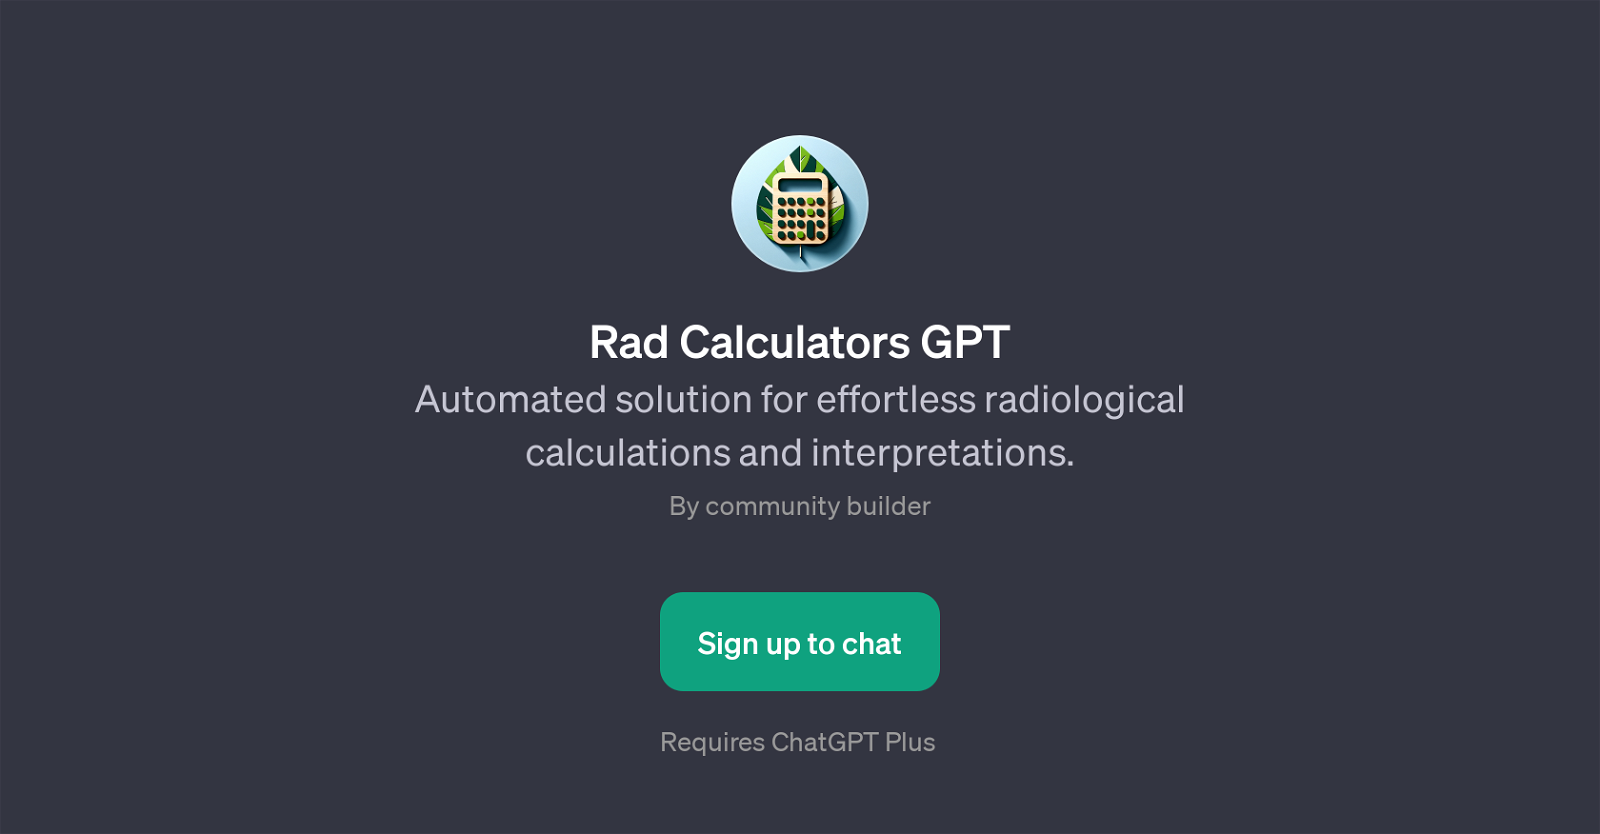 Rad Calculators GPT website